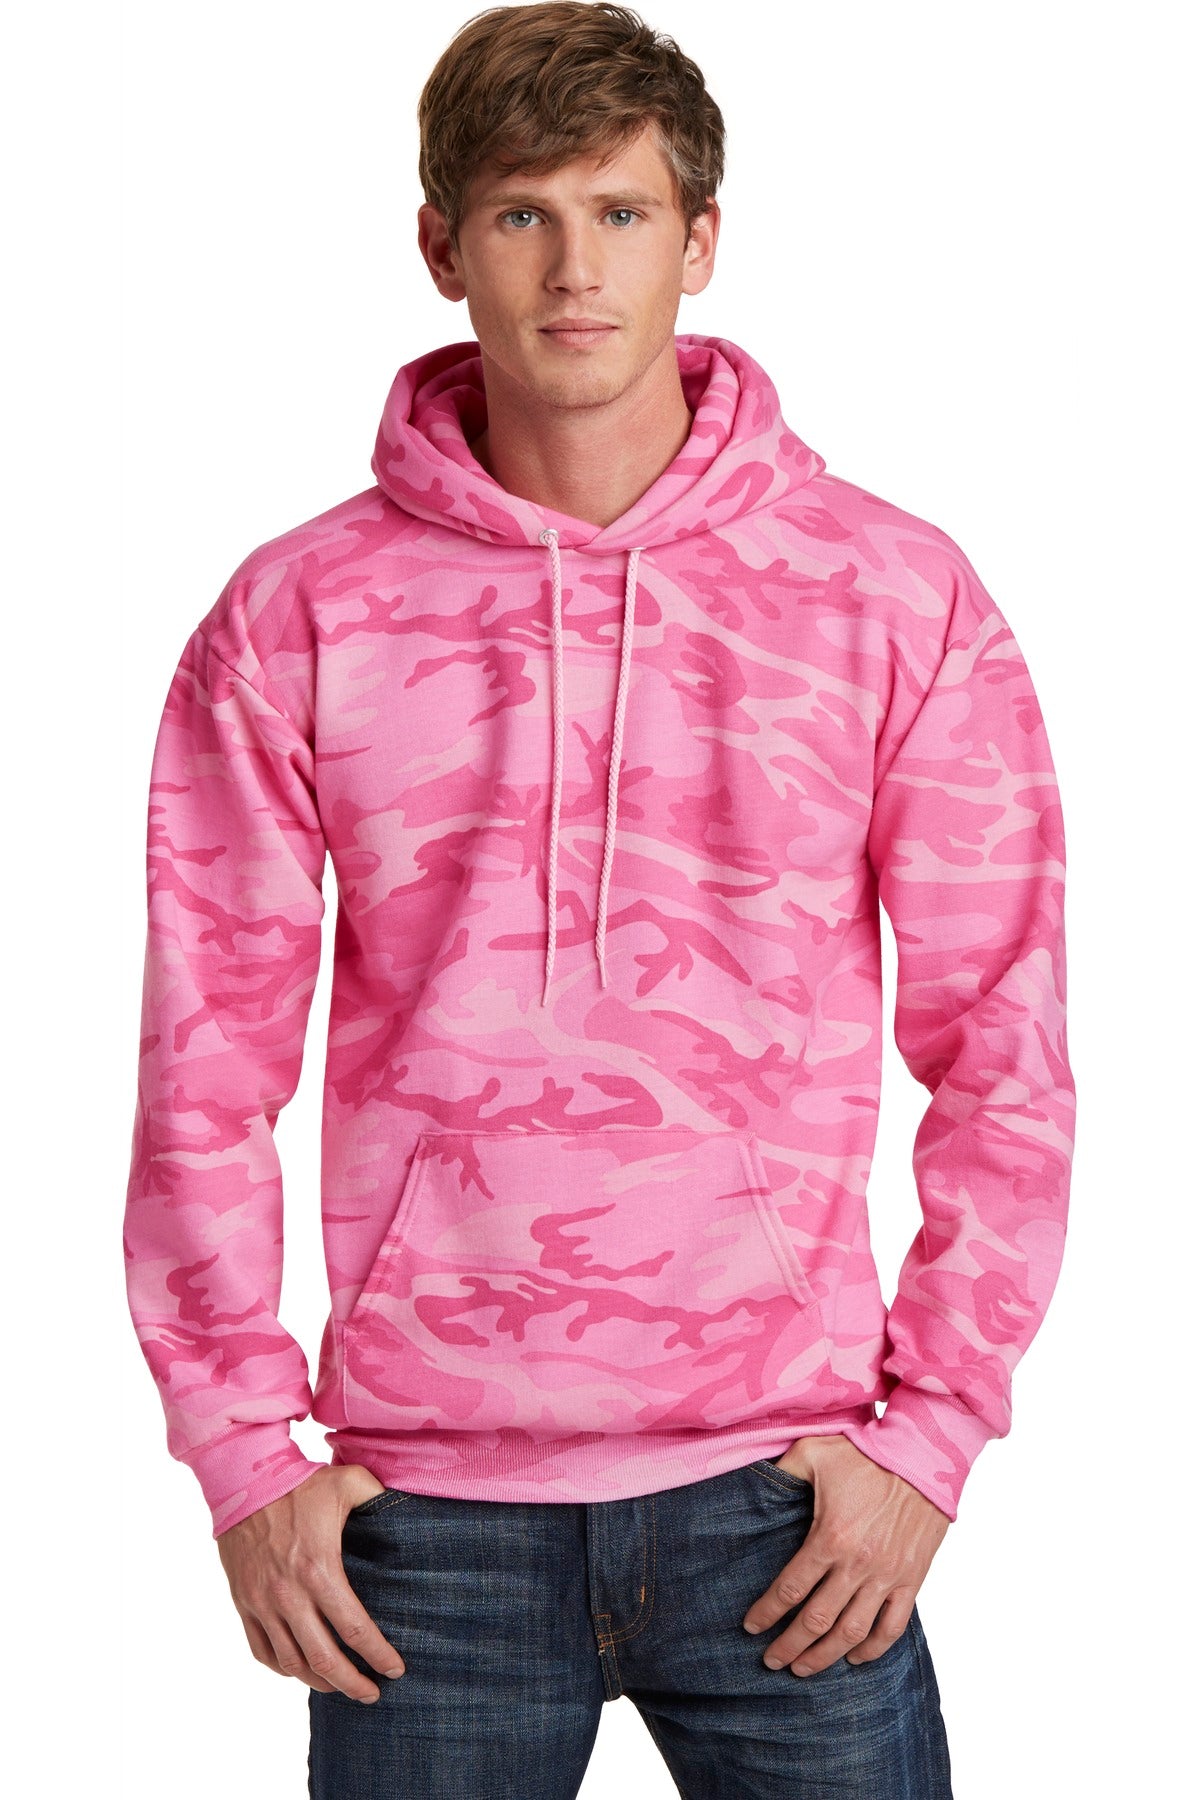 Sweatshirts/Fleece Pink Camo Port & Company